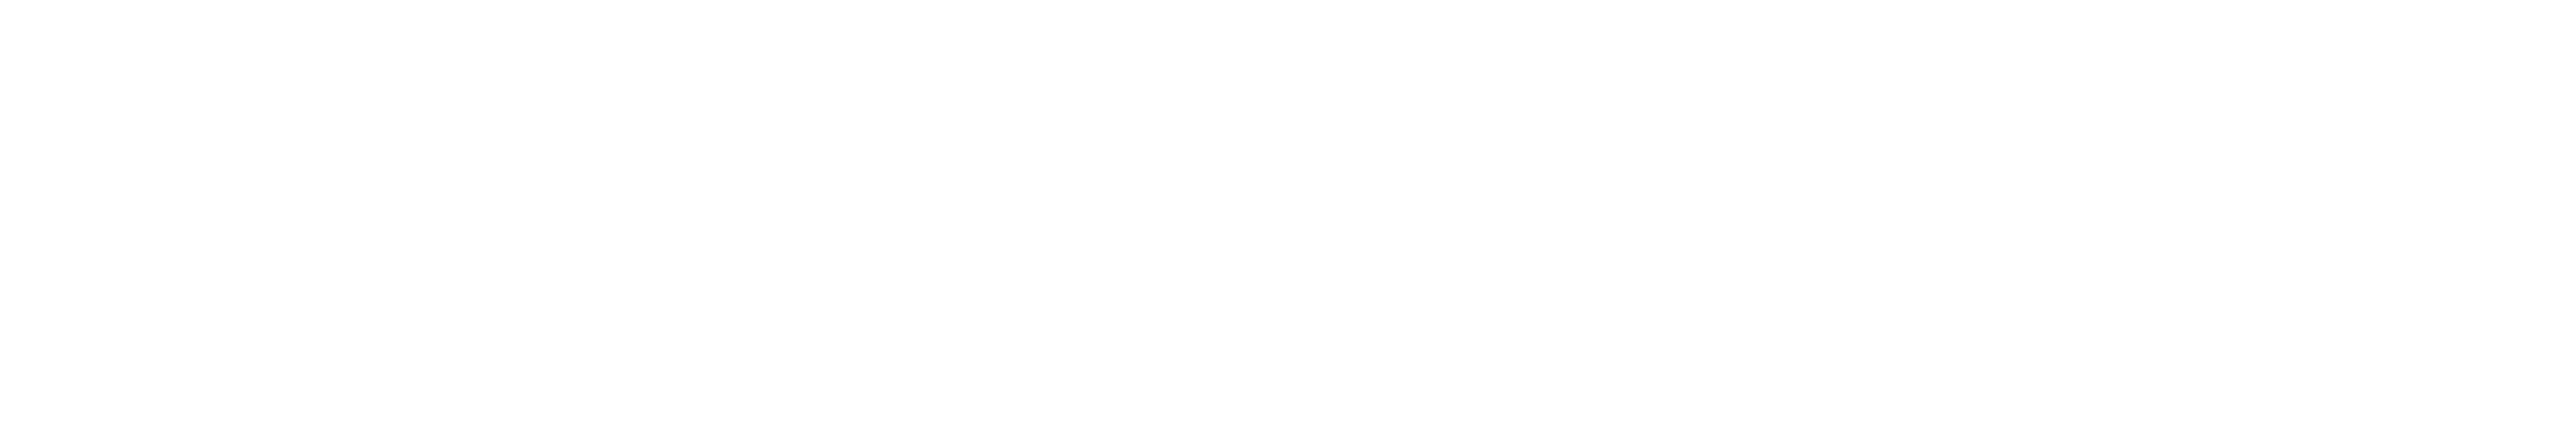 Logo_Øygarden_næringsutvikling_hvit